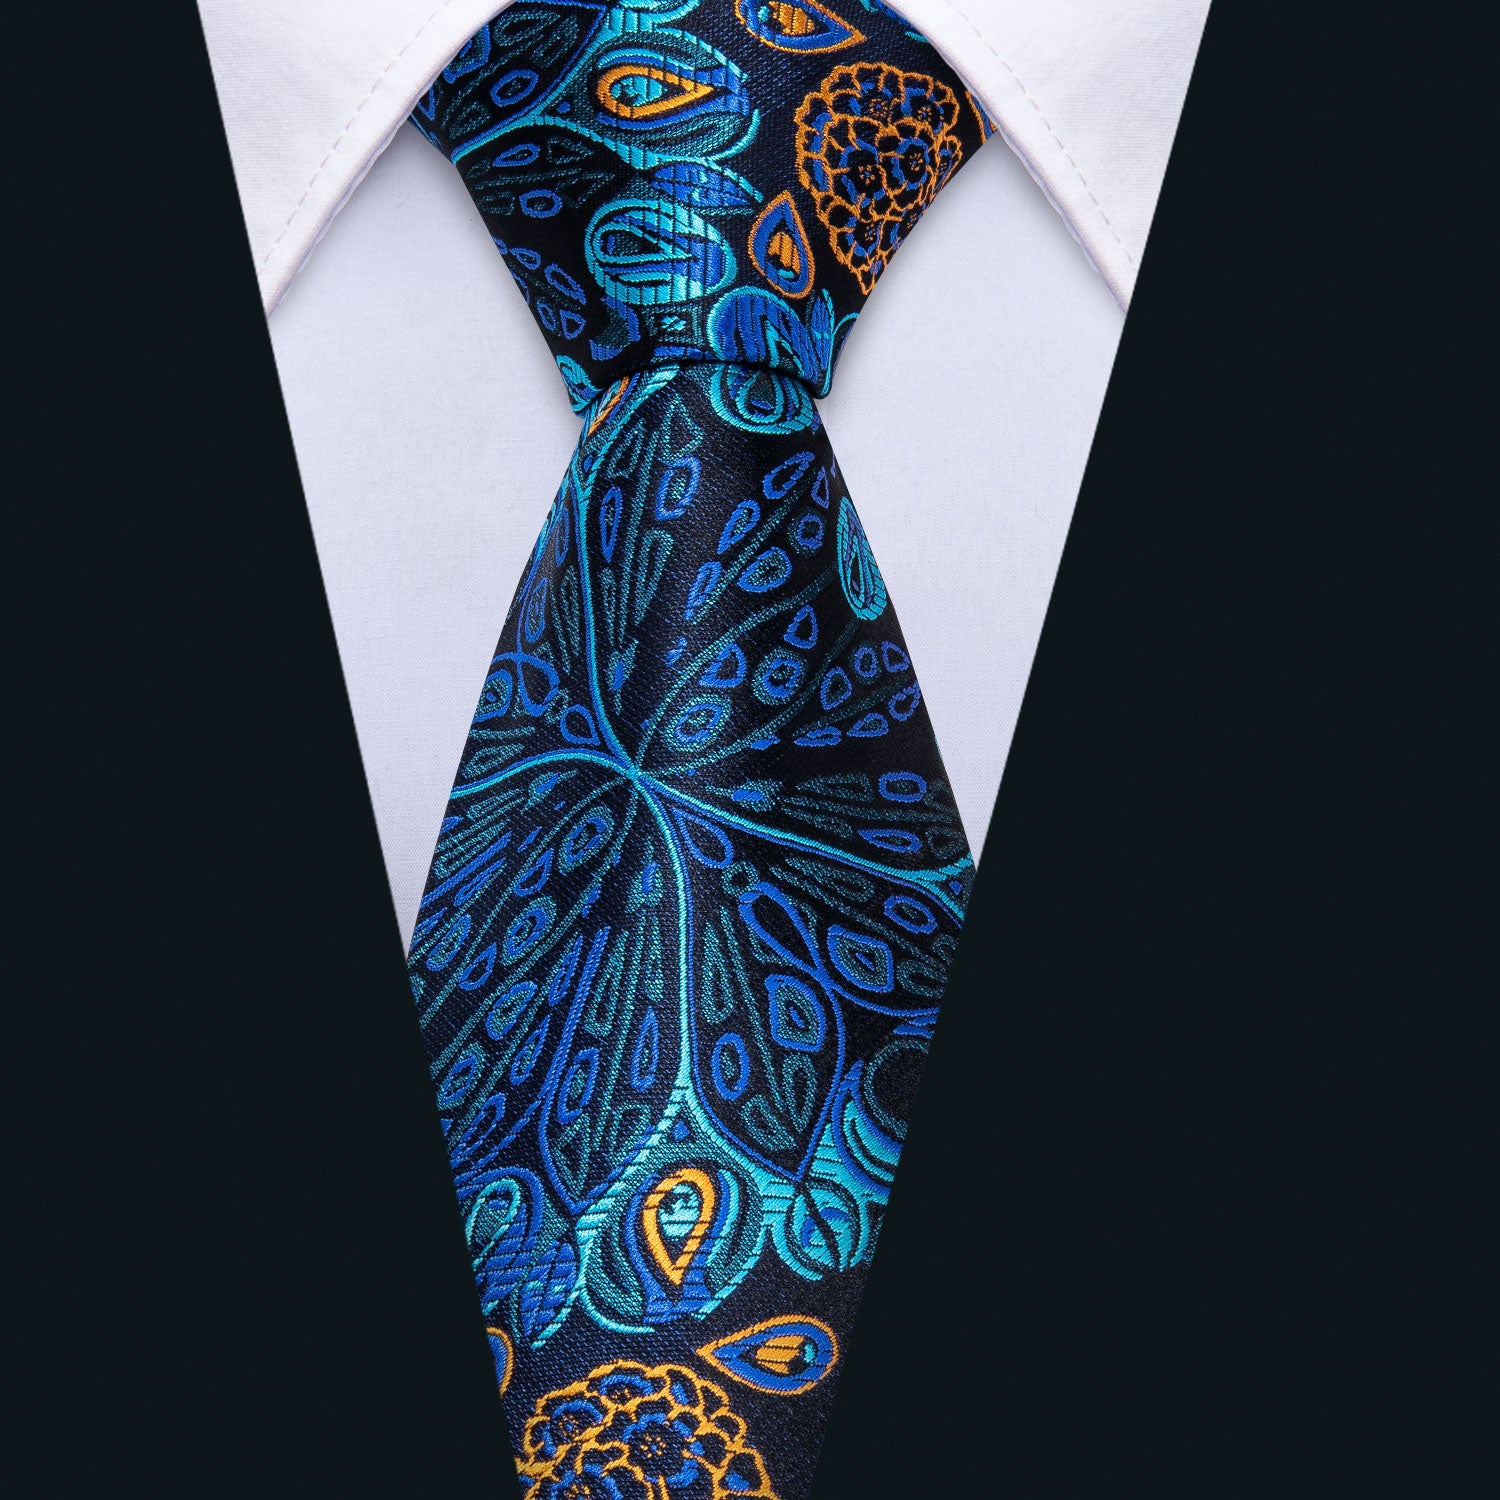 Fantastic Blue Floral Tie Pocket Square Cufflinks Set